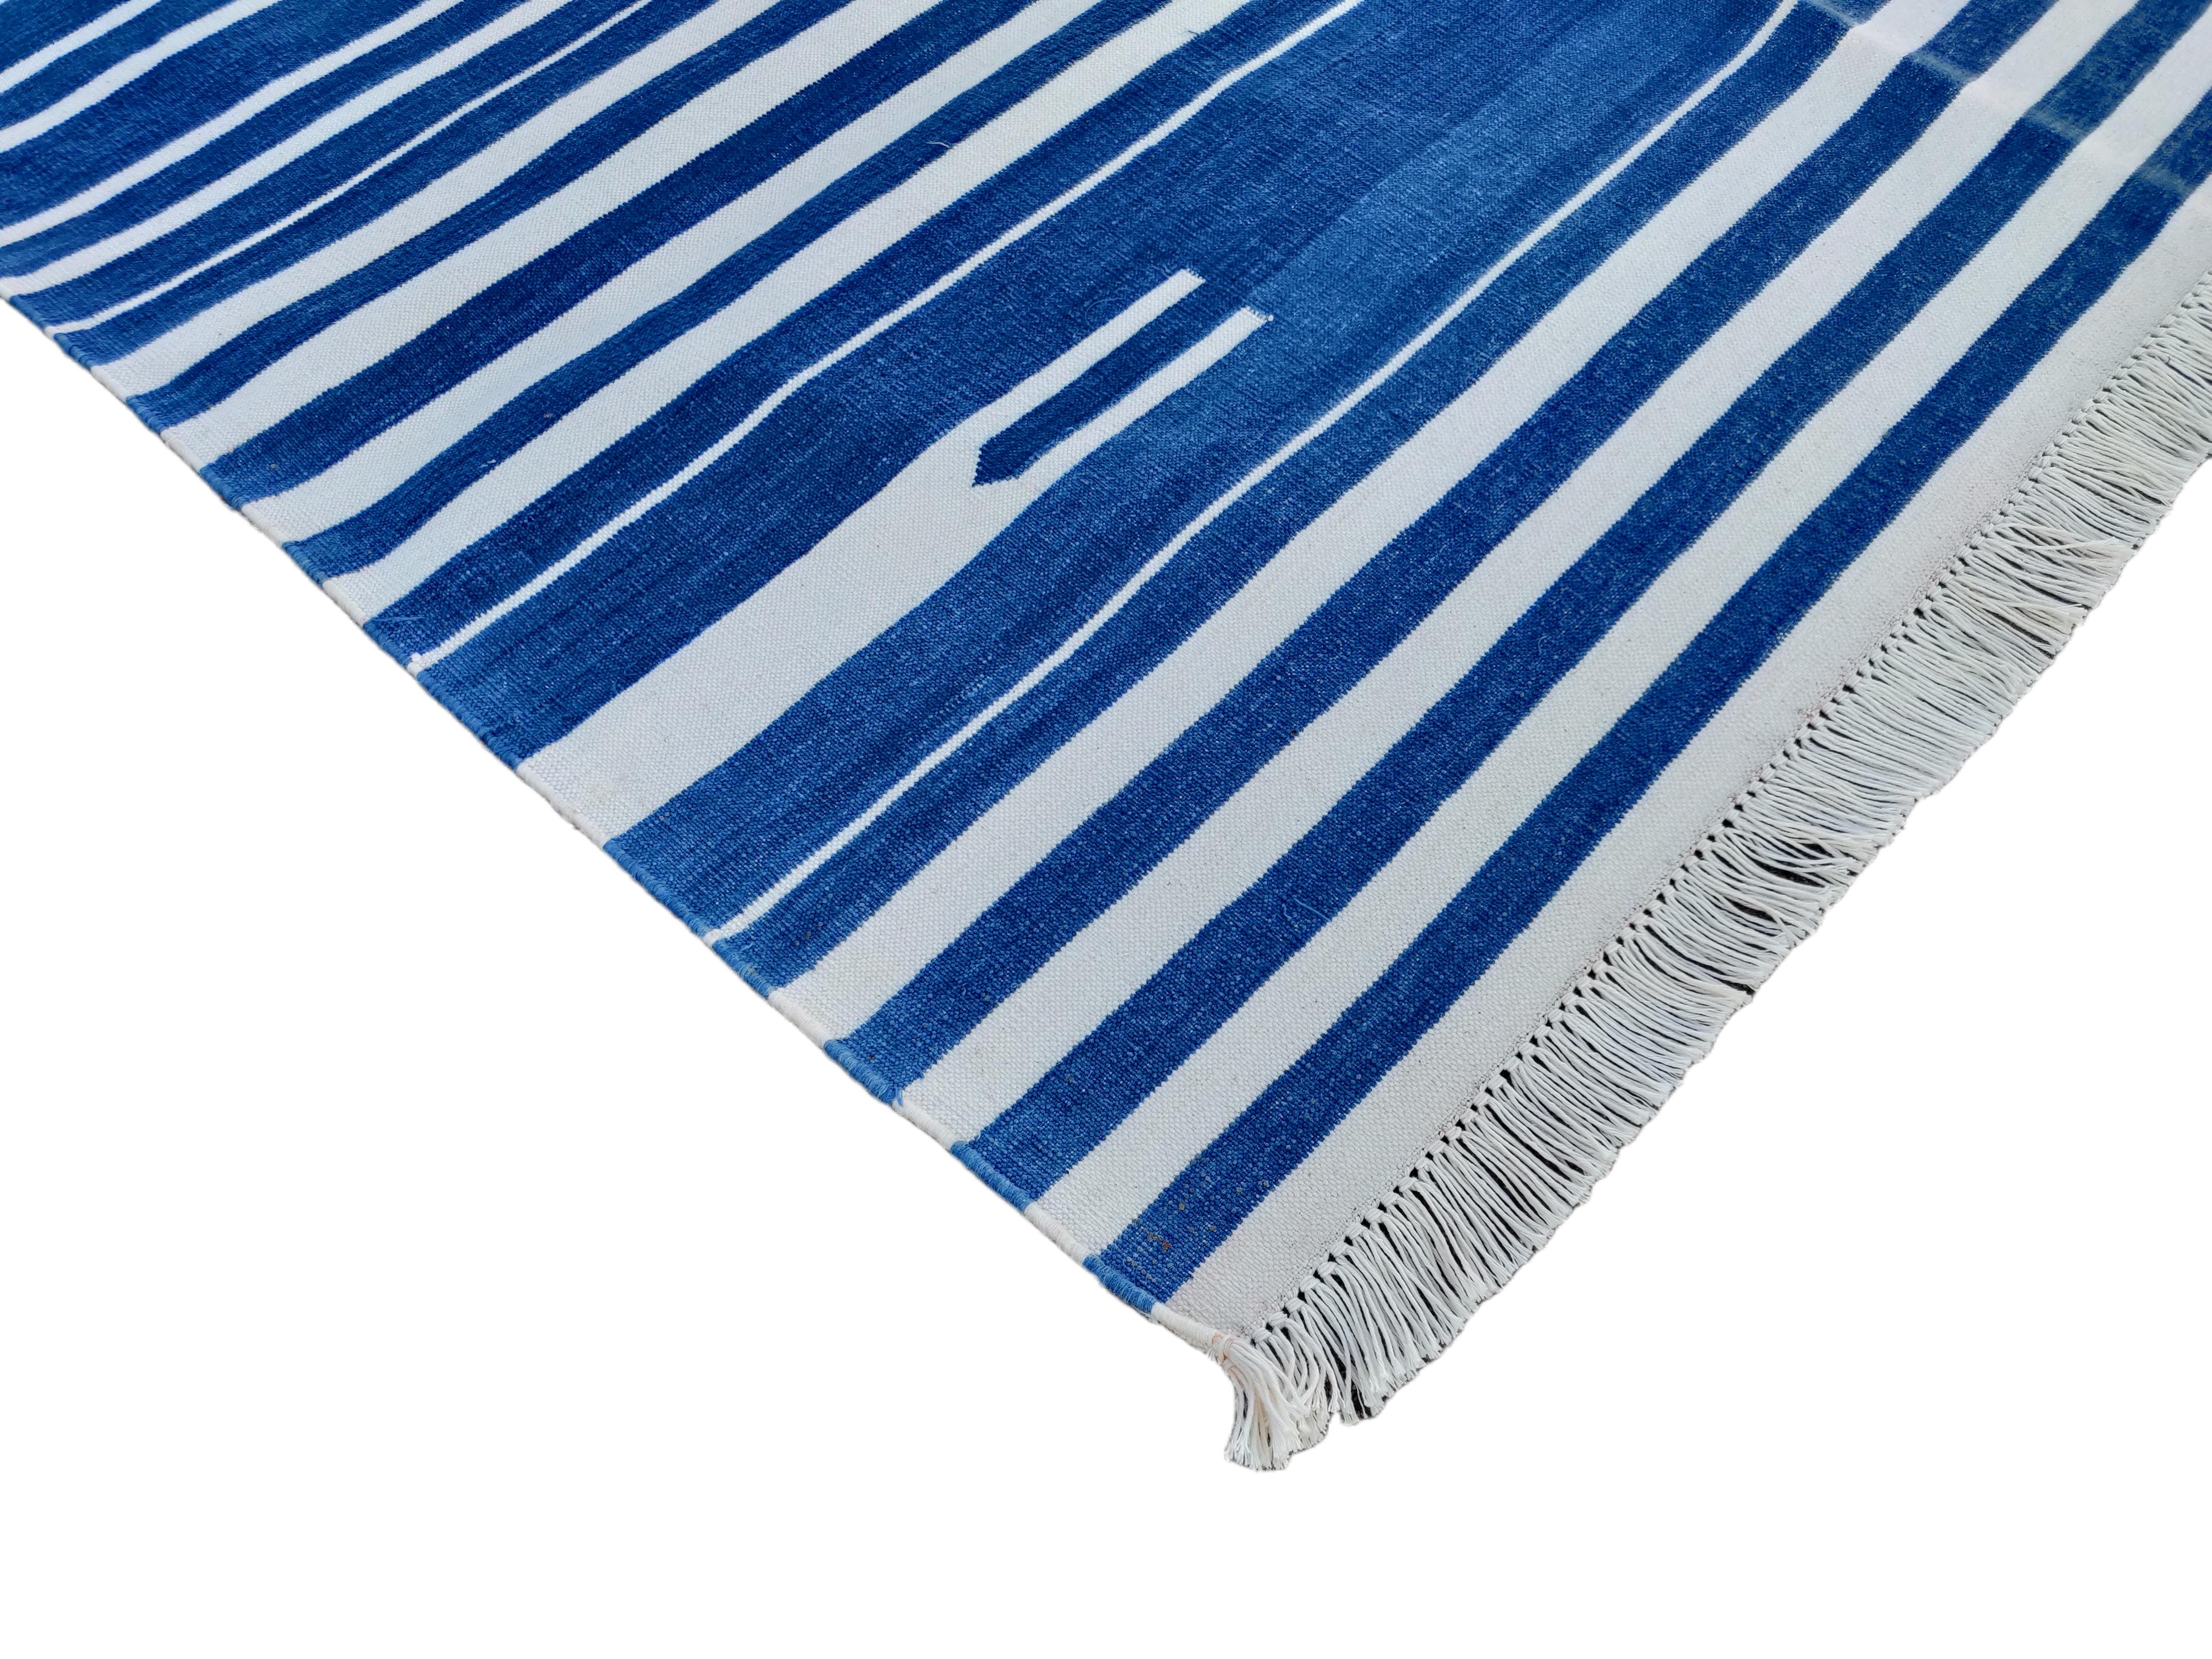 Baumwolle pflanzlich gefärbt Indigo blau und weiß gestreift indischen Dhurrie Teppich-4'x6' 

Diese speziellen flachgewebten Dhurries werden aus 15-fachem Garn aus 100% Baumwolle handgewebt. Aufgrund der speziellen Fertigungstechniken, die zur